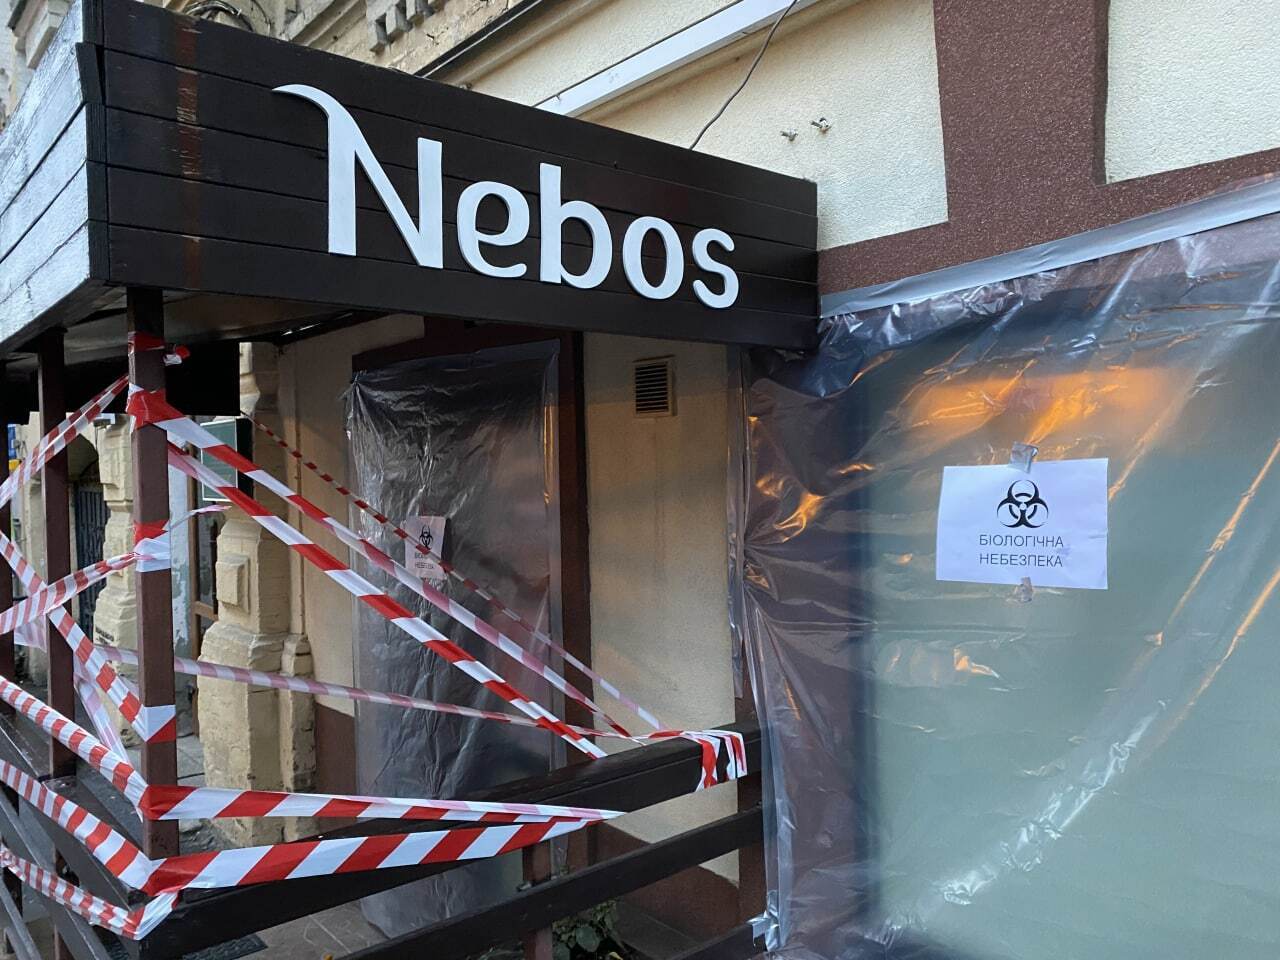 Ресторан Nebos прекратил работу из-за нарушений правил "красной" зоны карантина